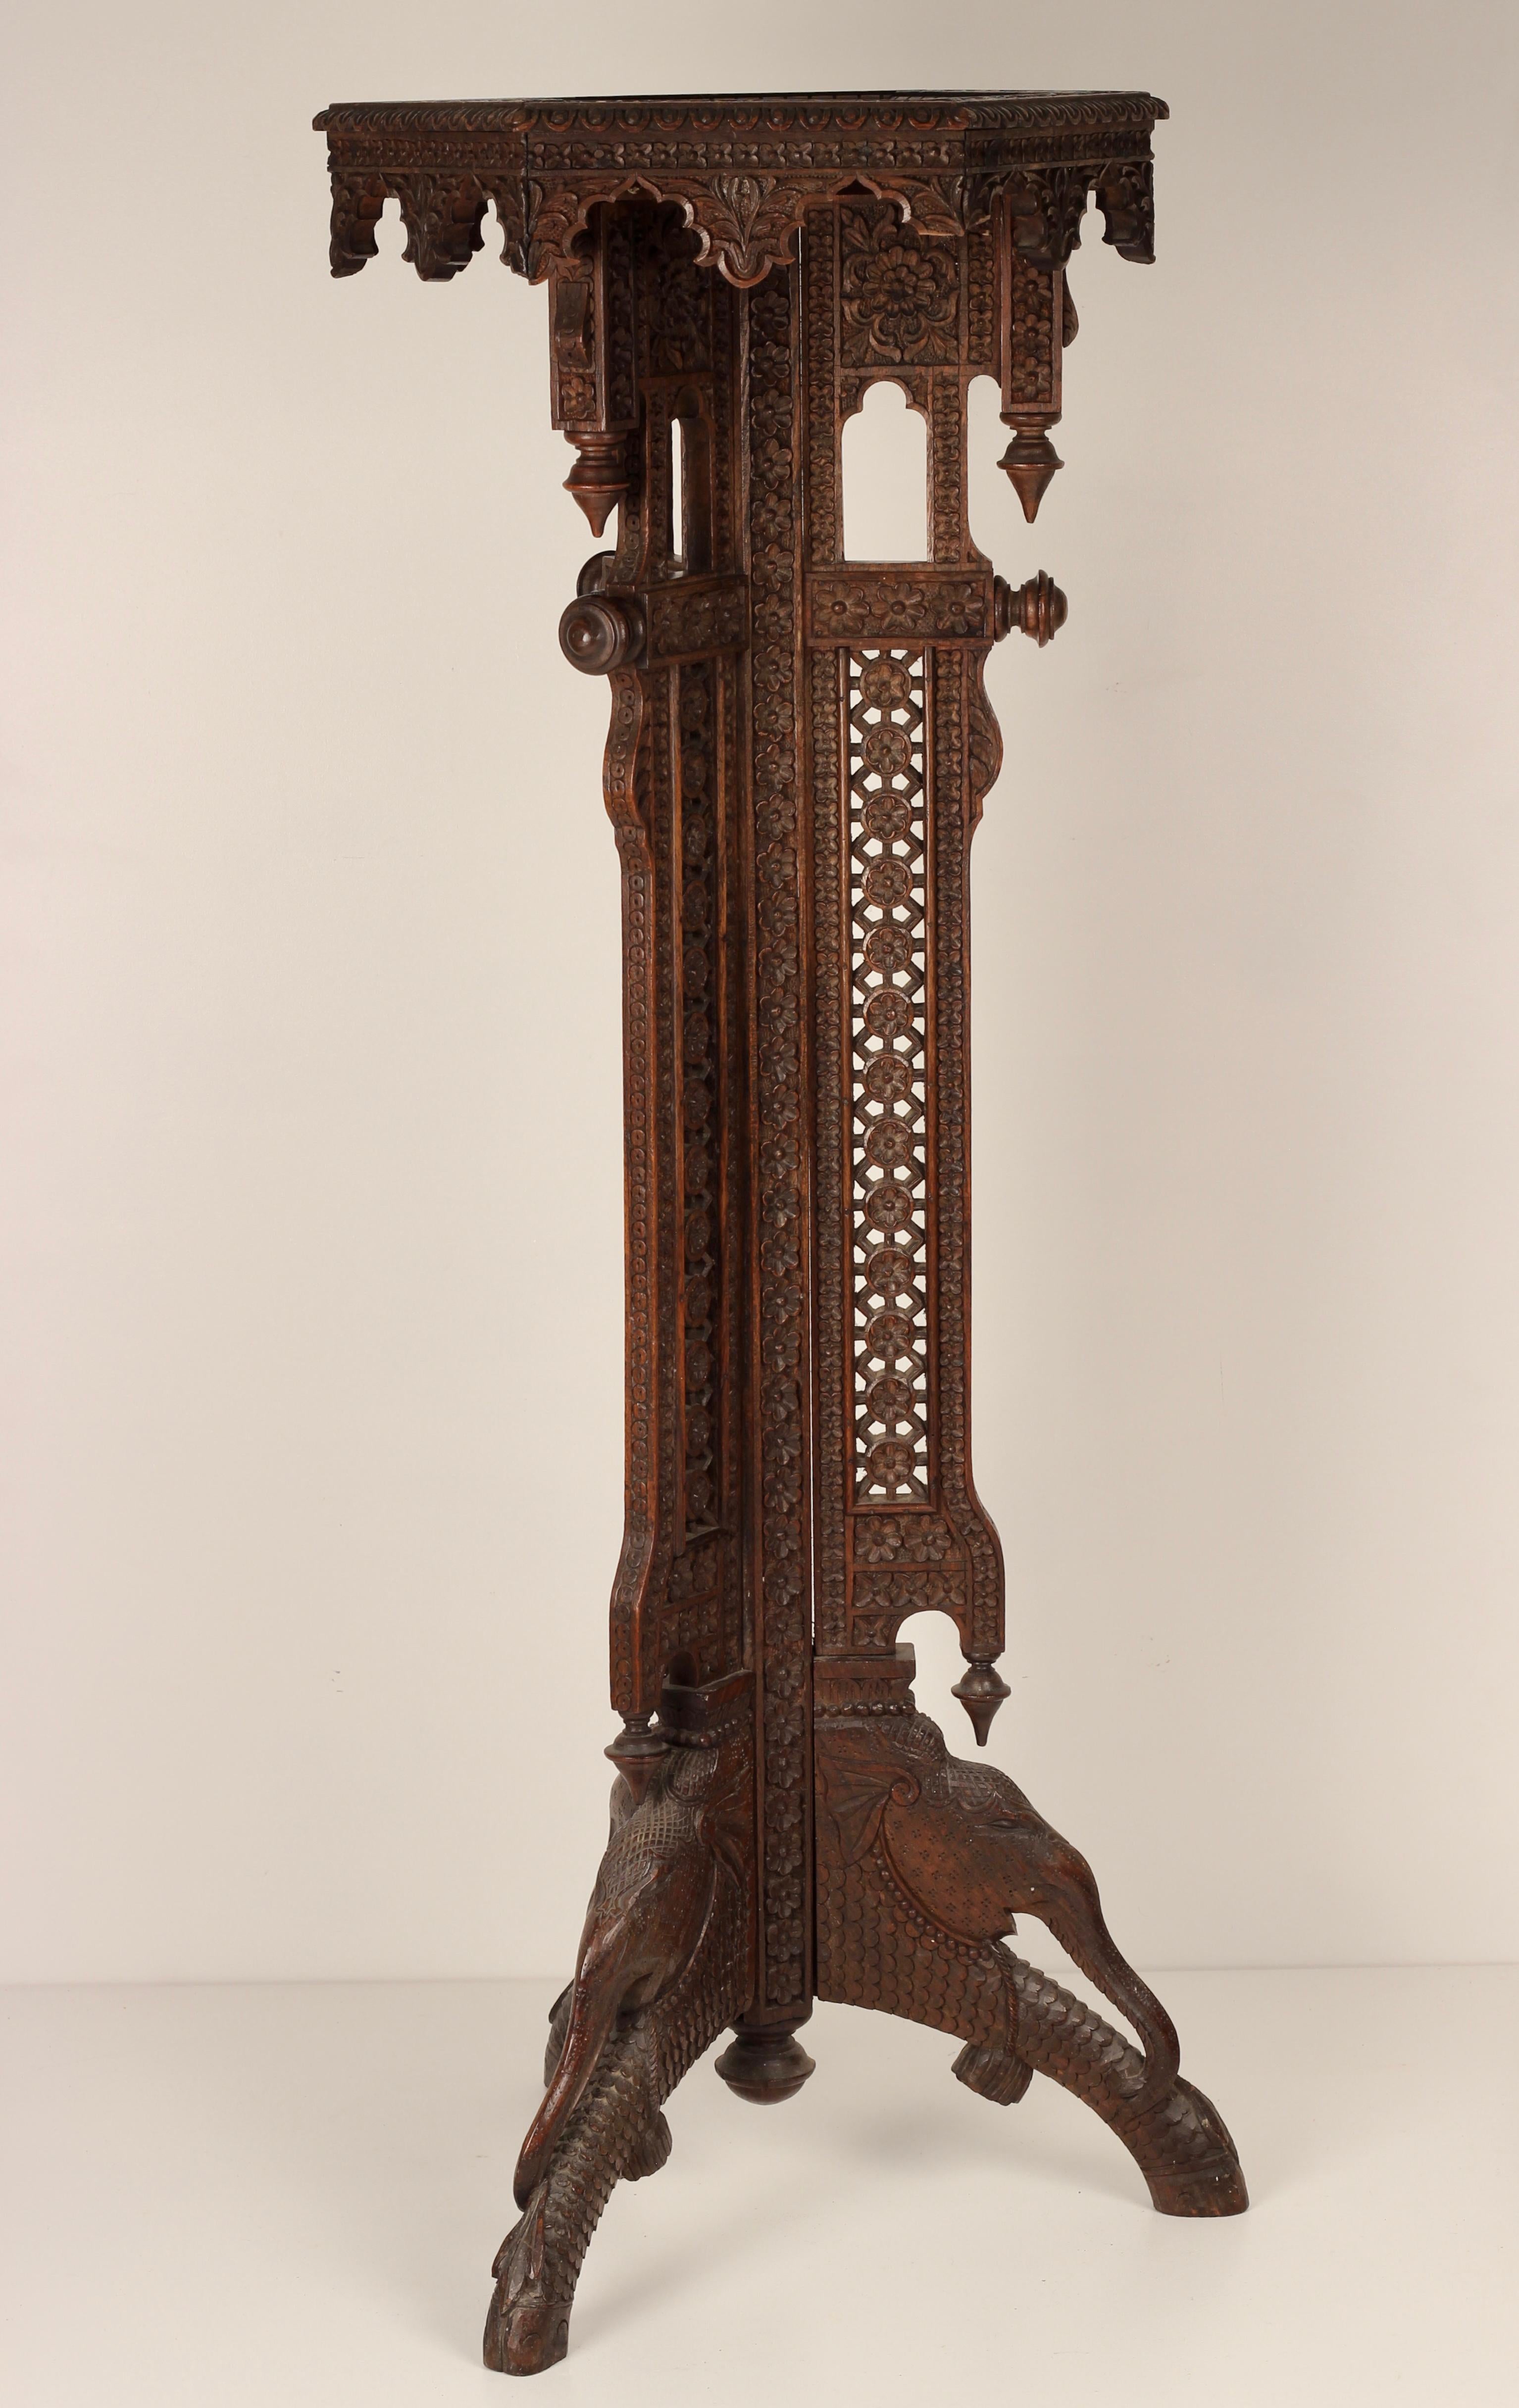 Torchère incroyablement détaillée et ornée, sculptée à la main en Inde à la fin du 19ème siècle. Quatre éléphants de profil, entourés d'une masse de feuilles et de fleurs sculptées, sont gravés dans la base de la pièce. Haute et élégante, cette